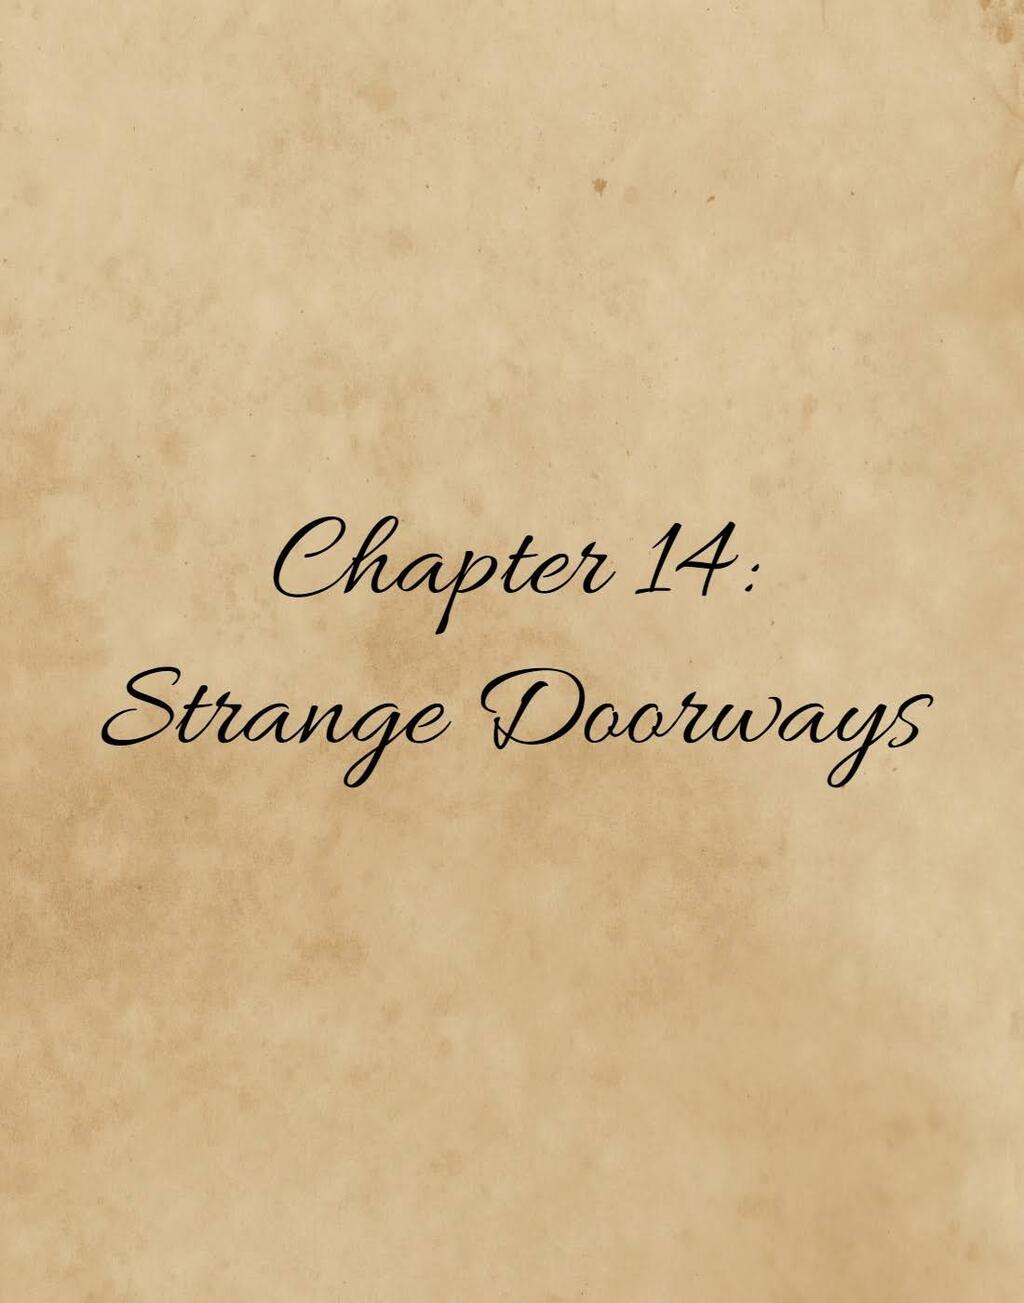 Chapter 14: Strange Doorways